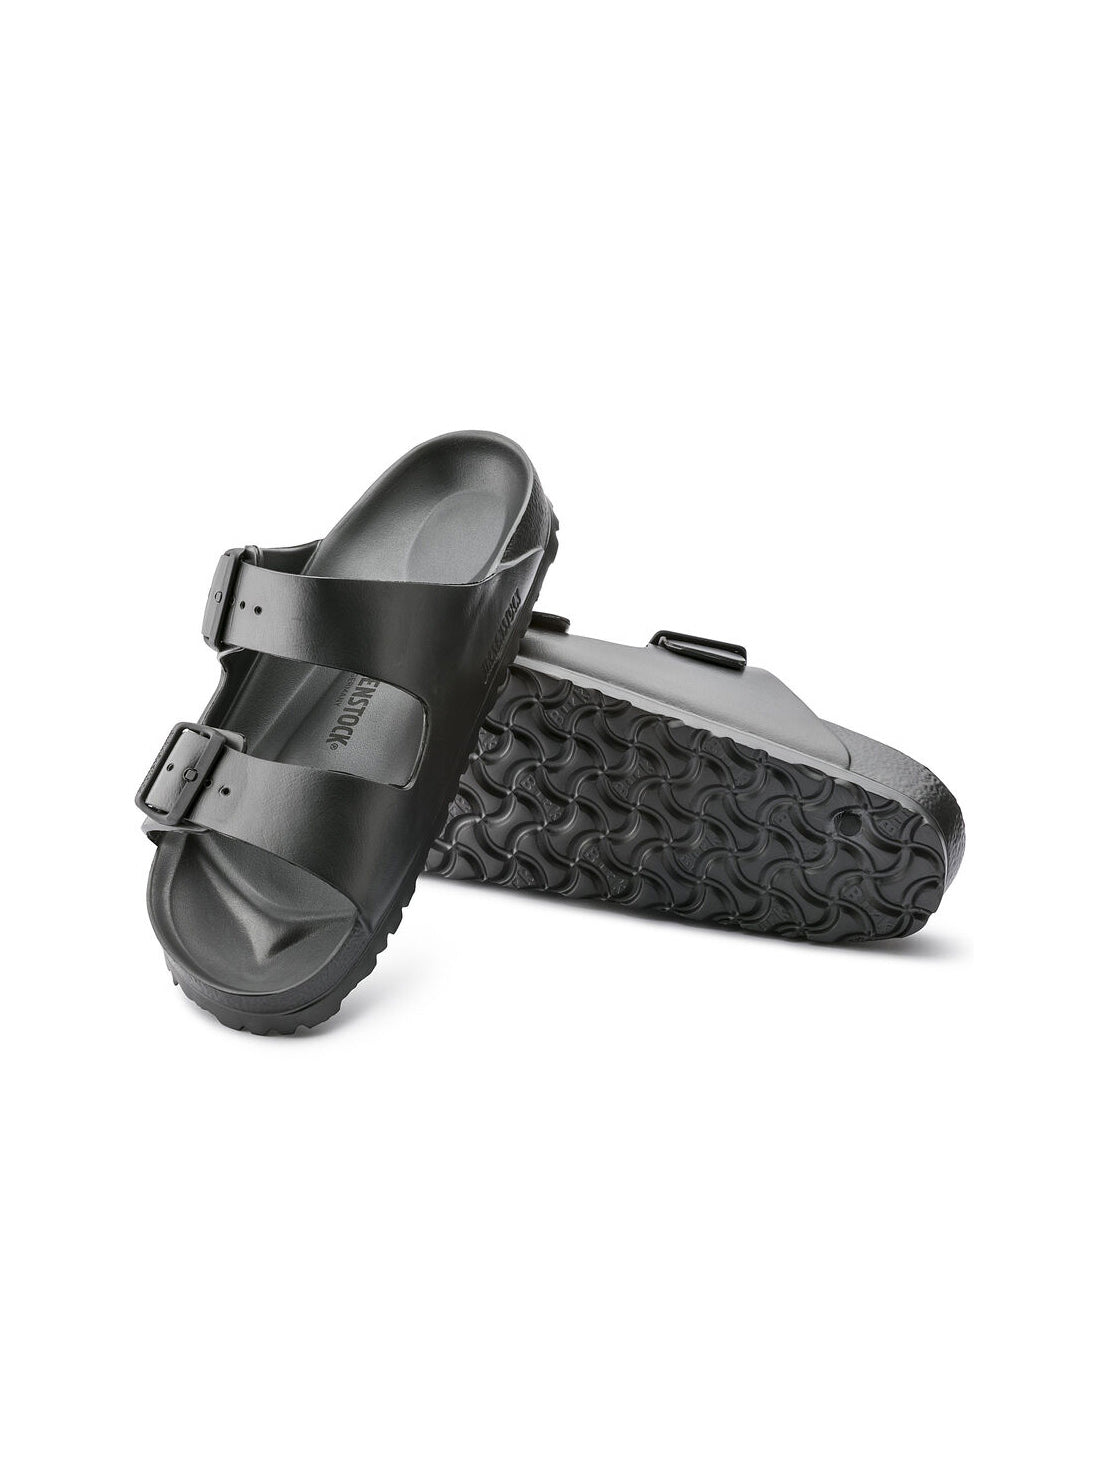 birkenstock arizona essentials eva sandal in metallic anthracite